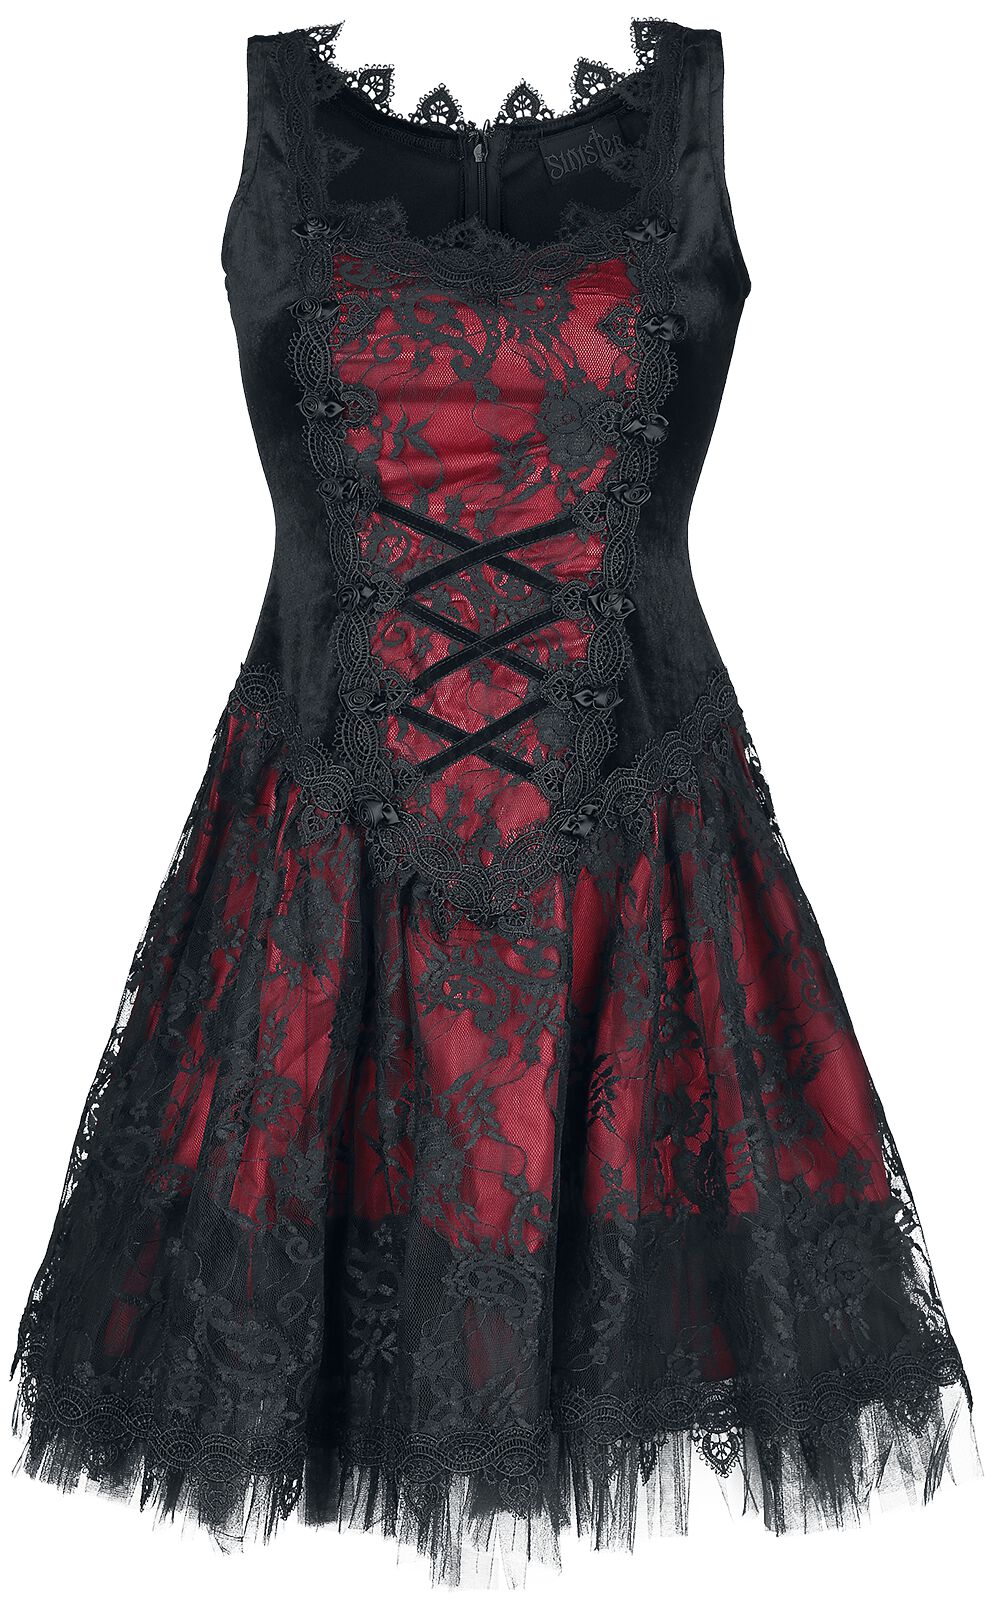 Sinister Gothic Gothic Dress Kurzes Kleid schwarz rot in XXL